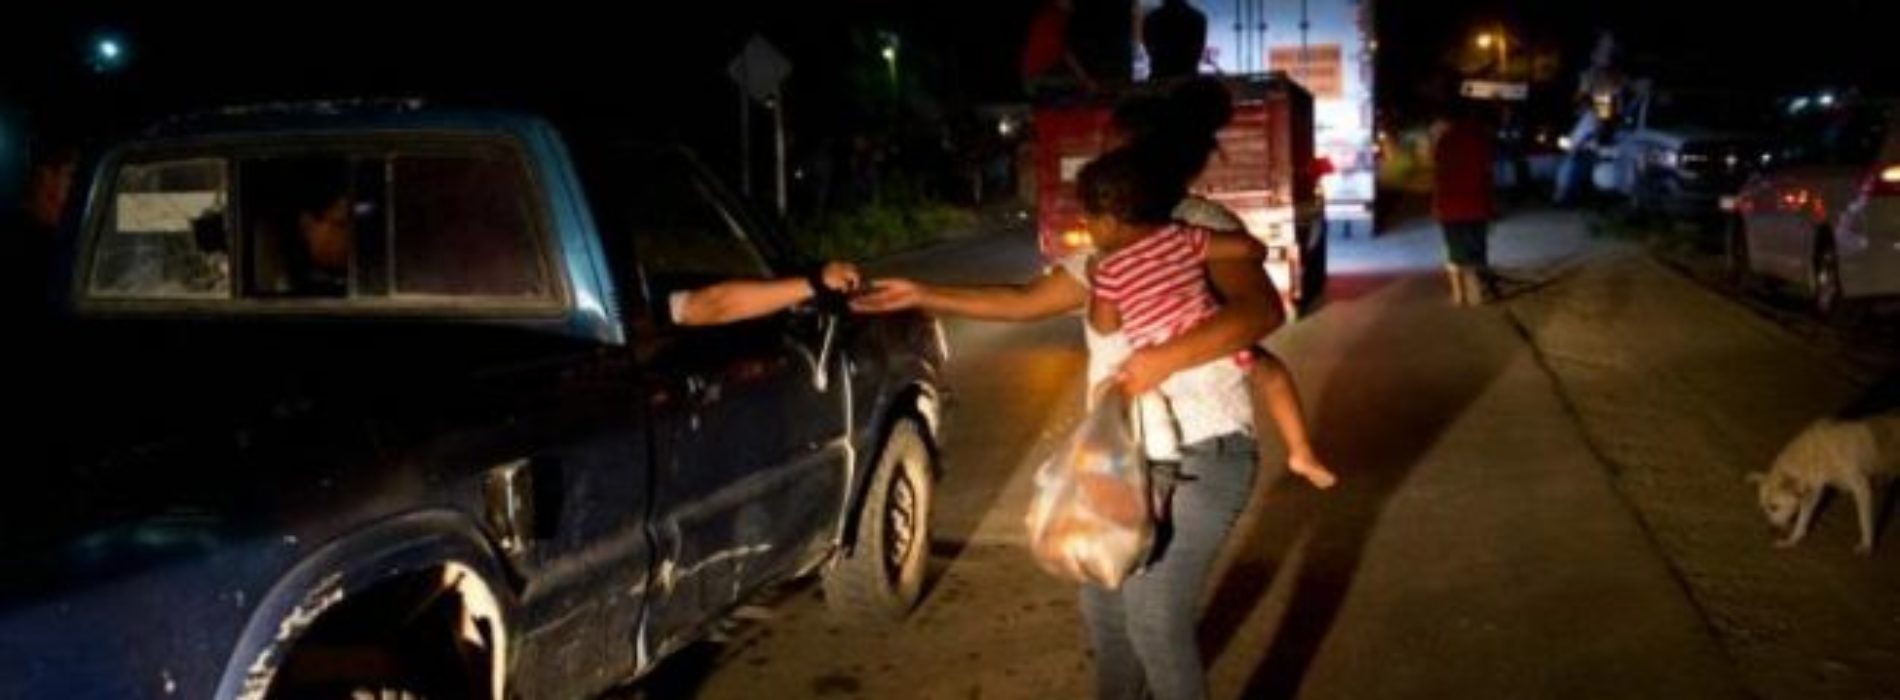 Crimen organizado habría ofrecido «empleo» a integrantes de
la caravana migrante